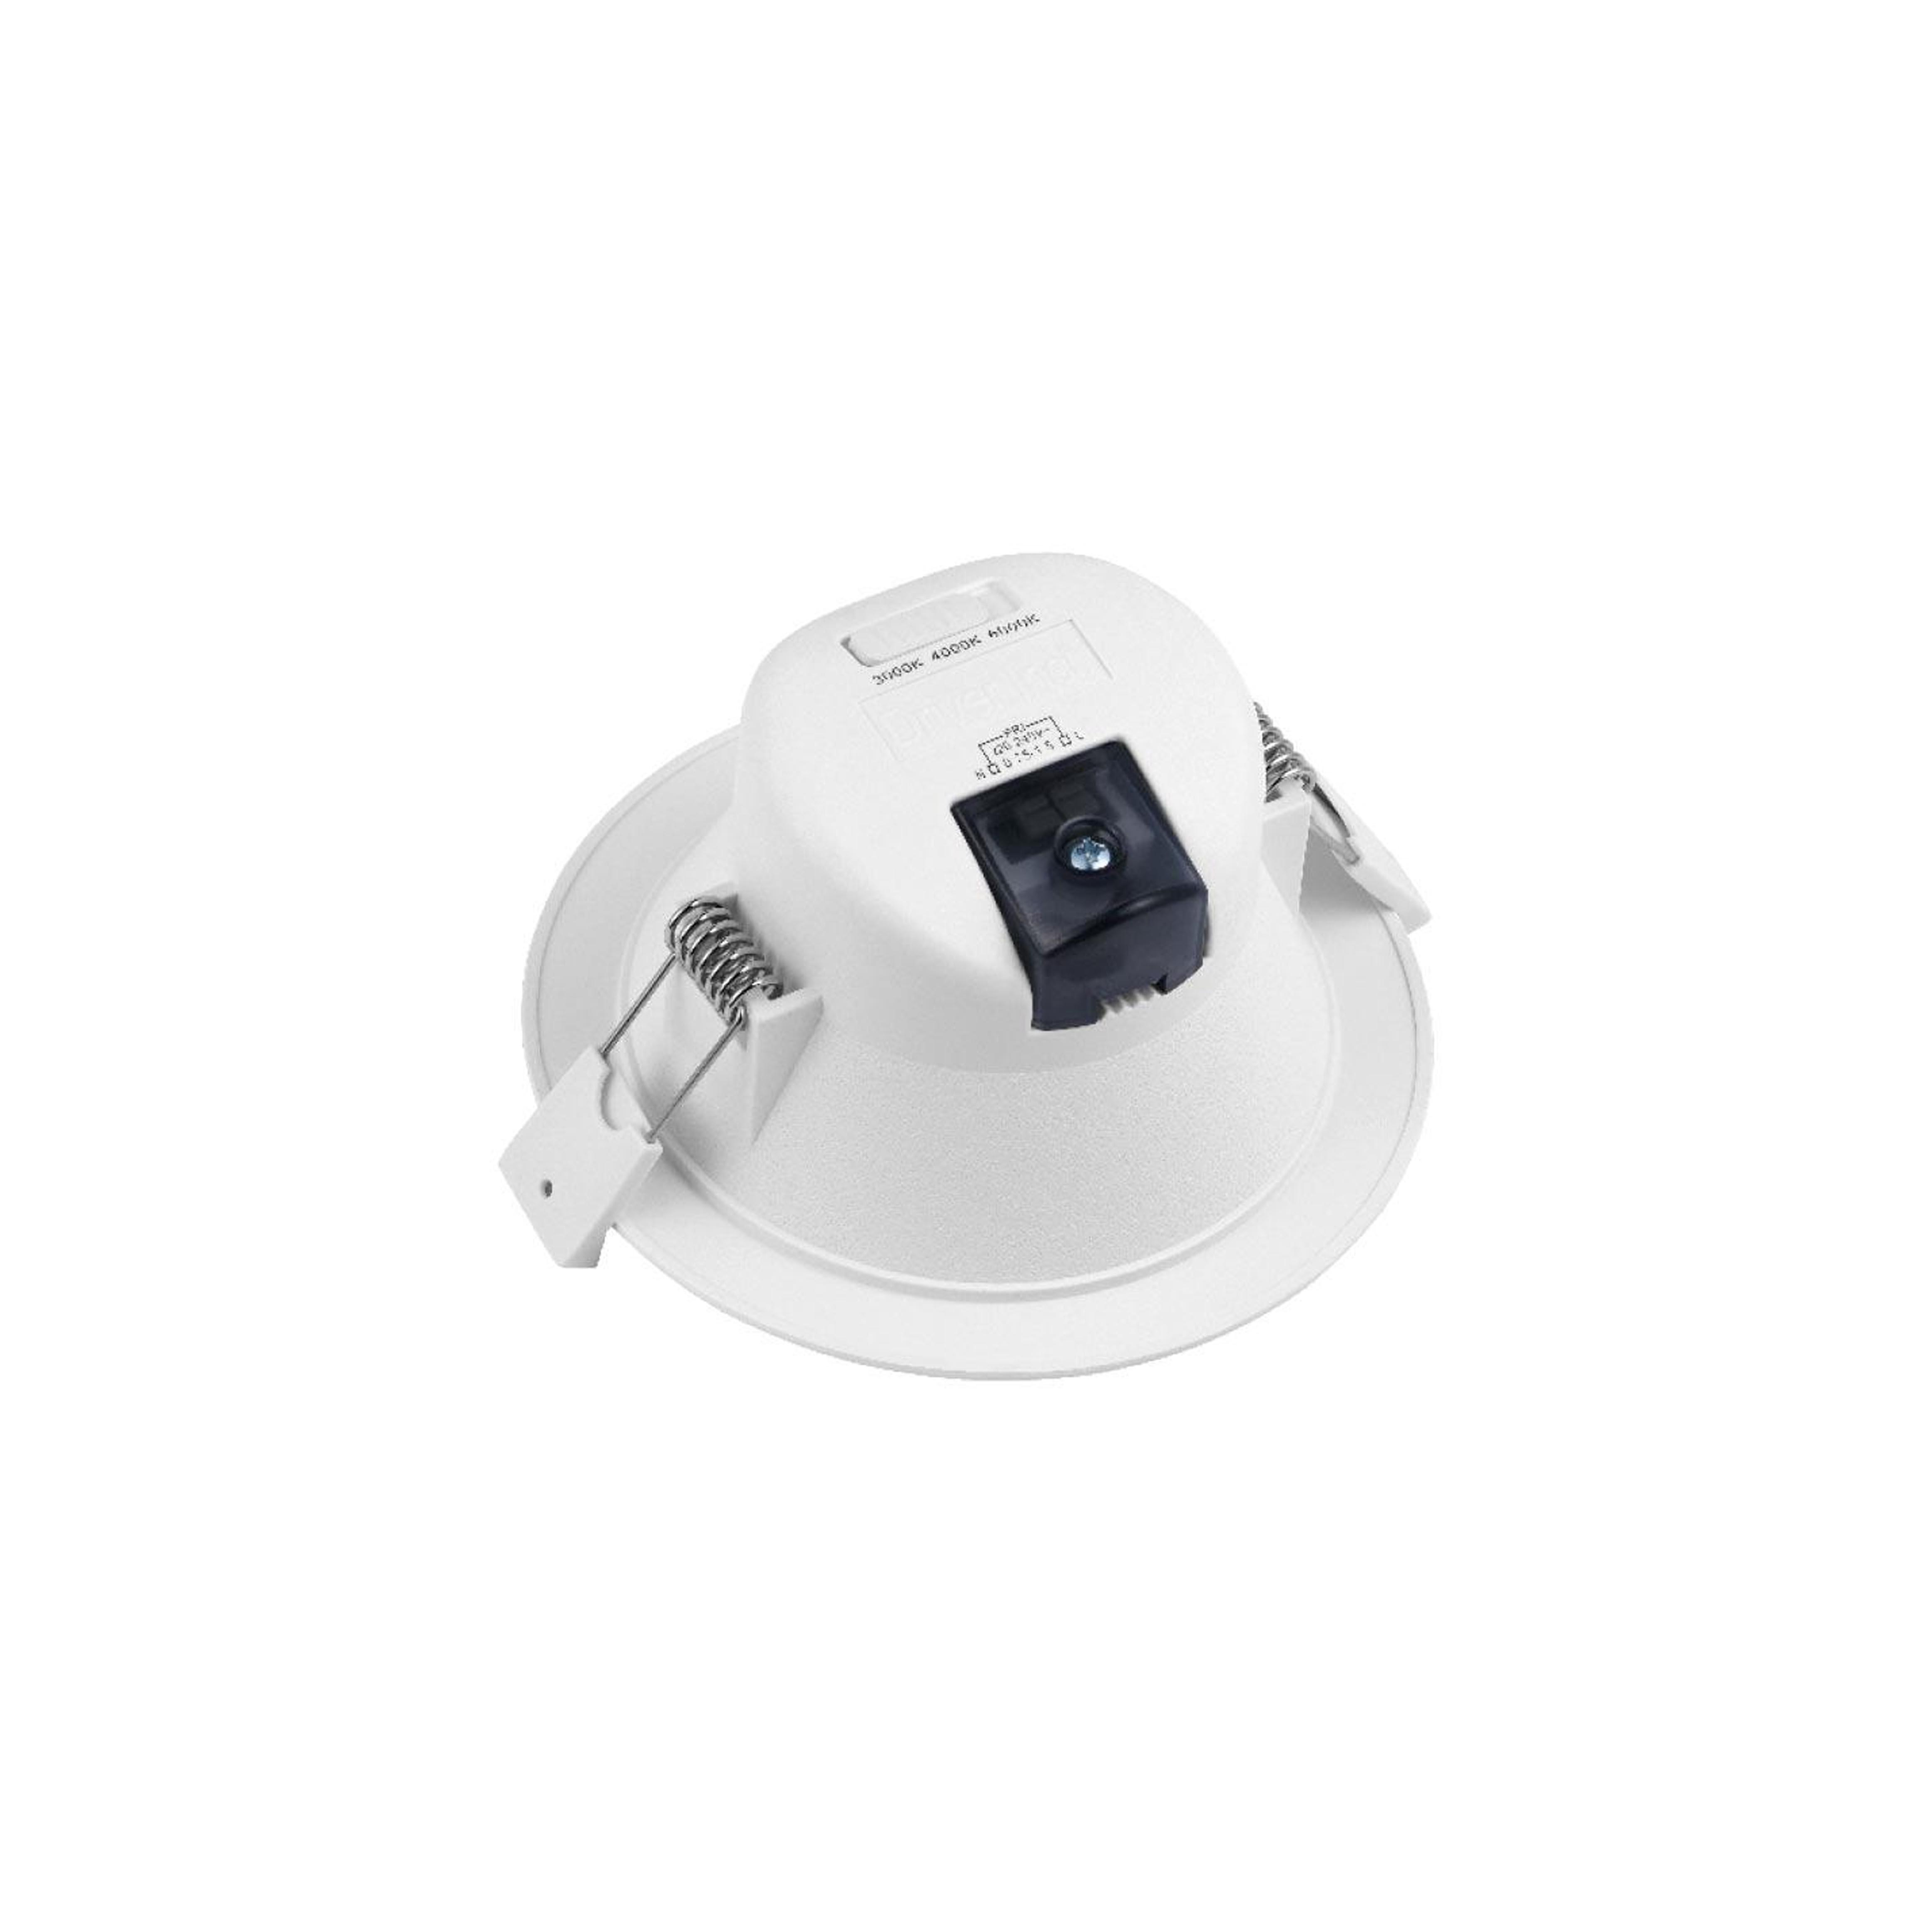 CCT LED Einbaustrahler rund weiß 90° dimmbar - Ausführung: 9W Ø113mm 